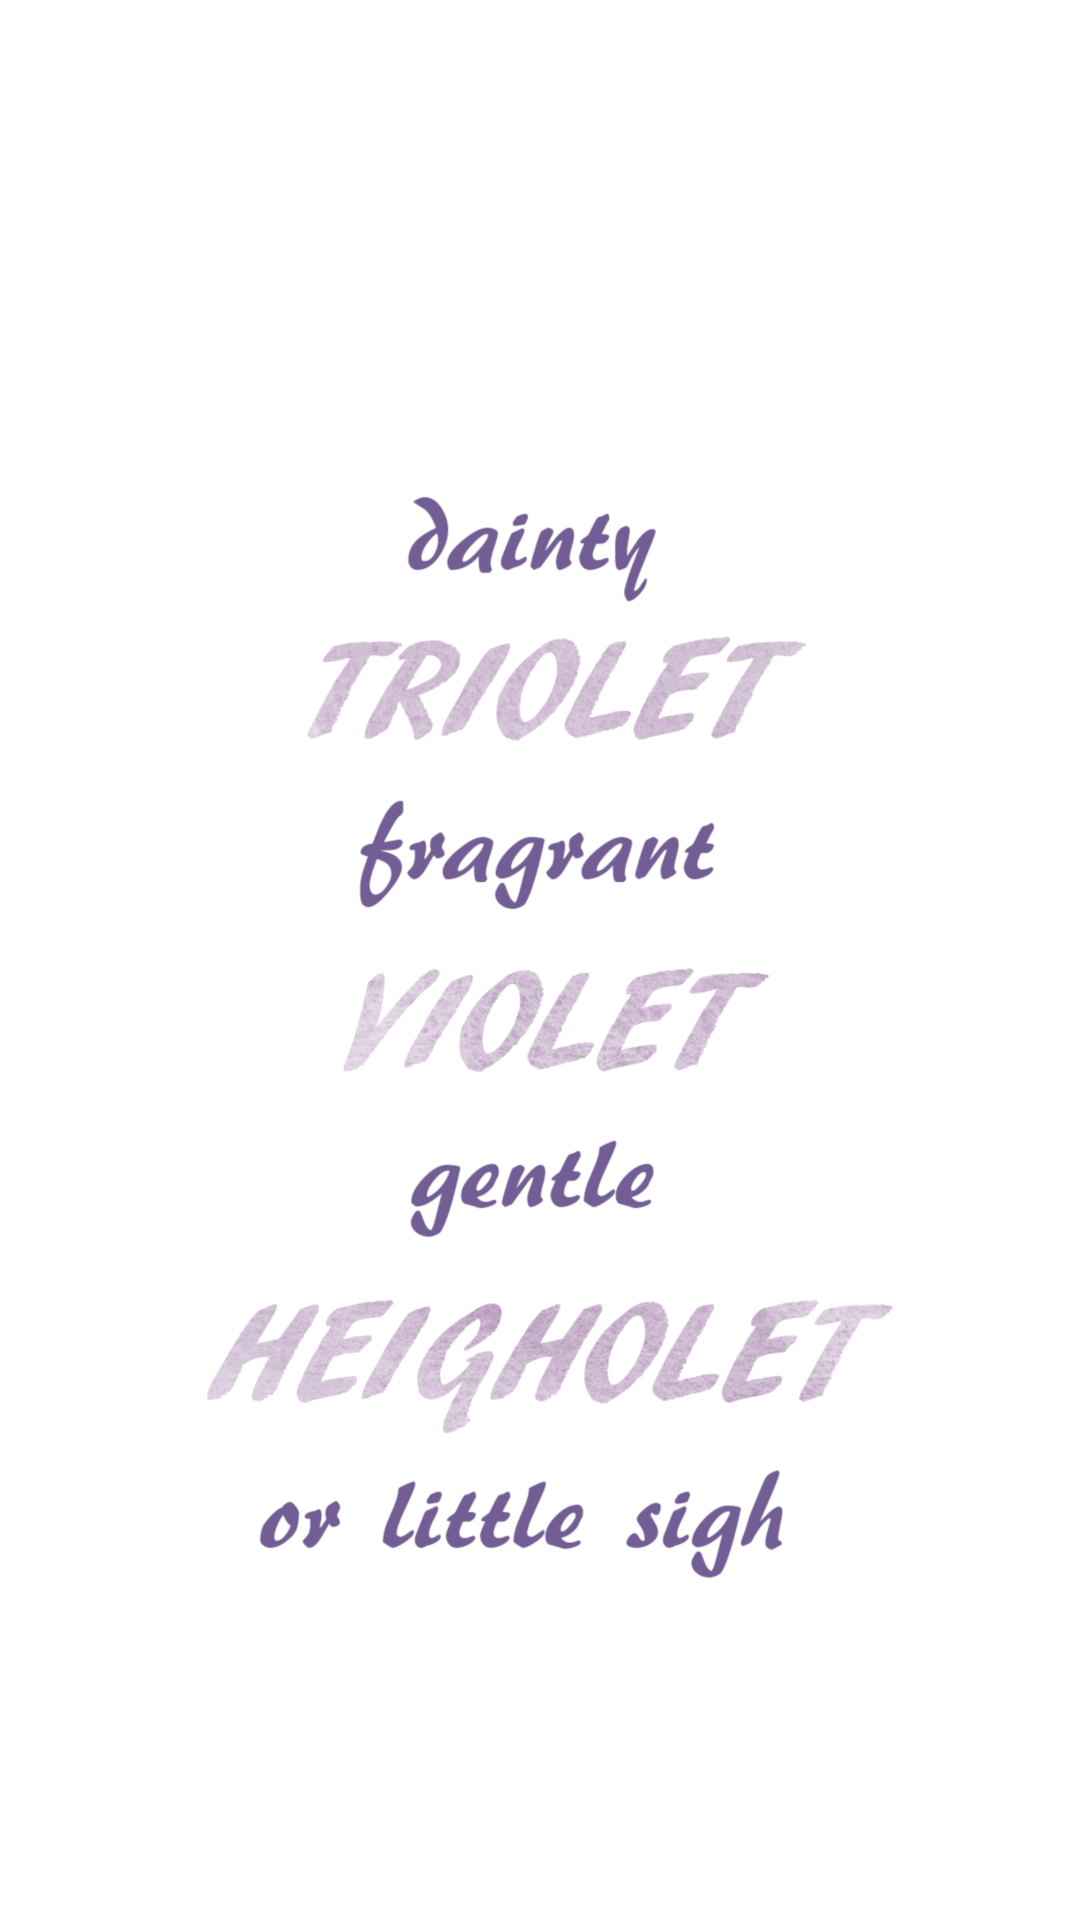 dainty triolet fragrant violet gentle heigholet or little sigh